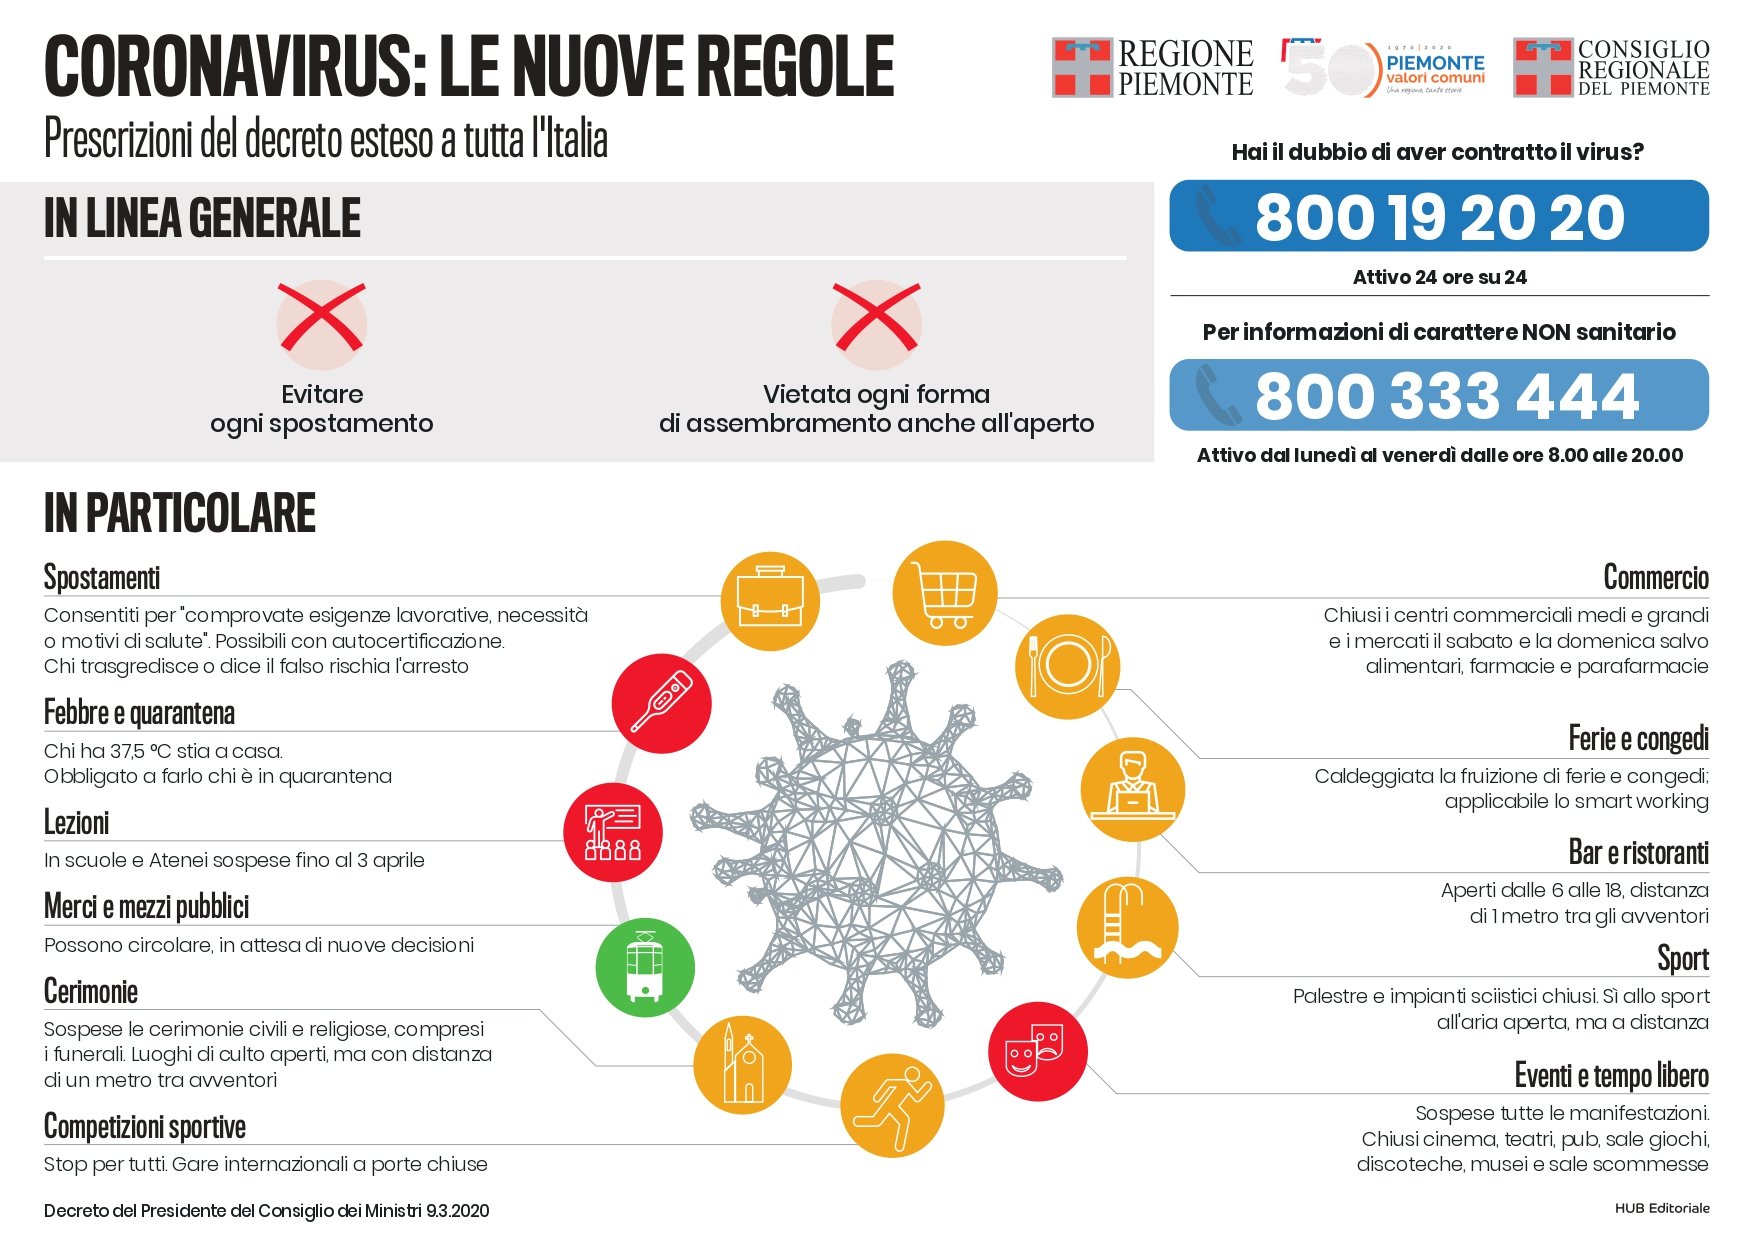 Un’immagine vale più di mille parole: ecco le regole anti-coronavirus